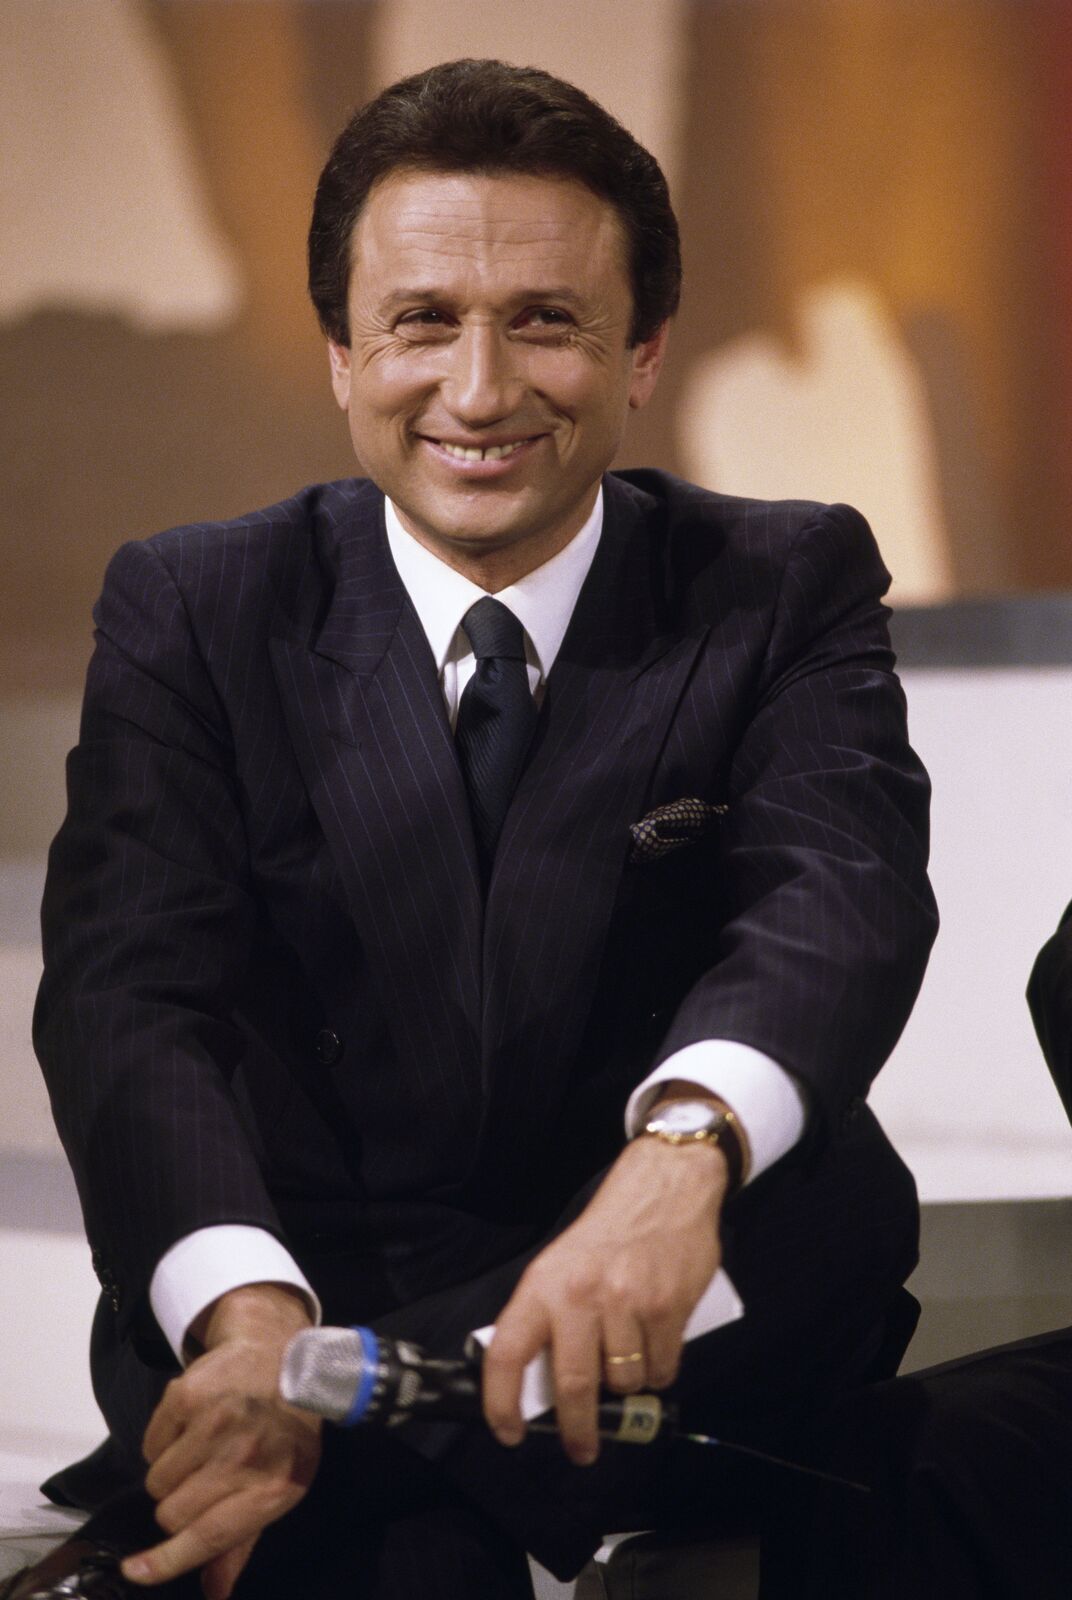 Michel Drucker sur le tournage de son émission de télévision Stars 90. | Photo : Getty Images